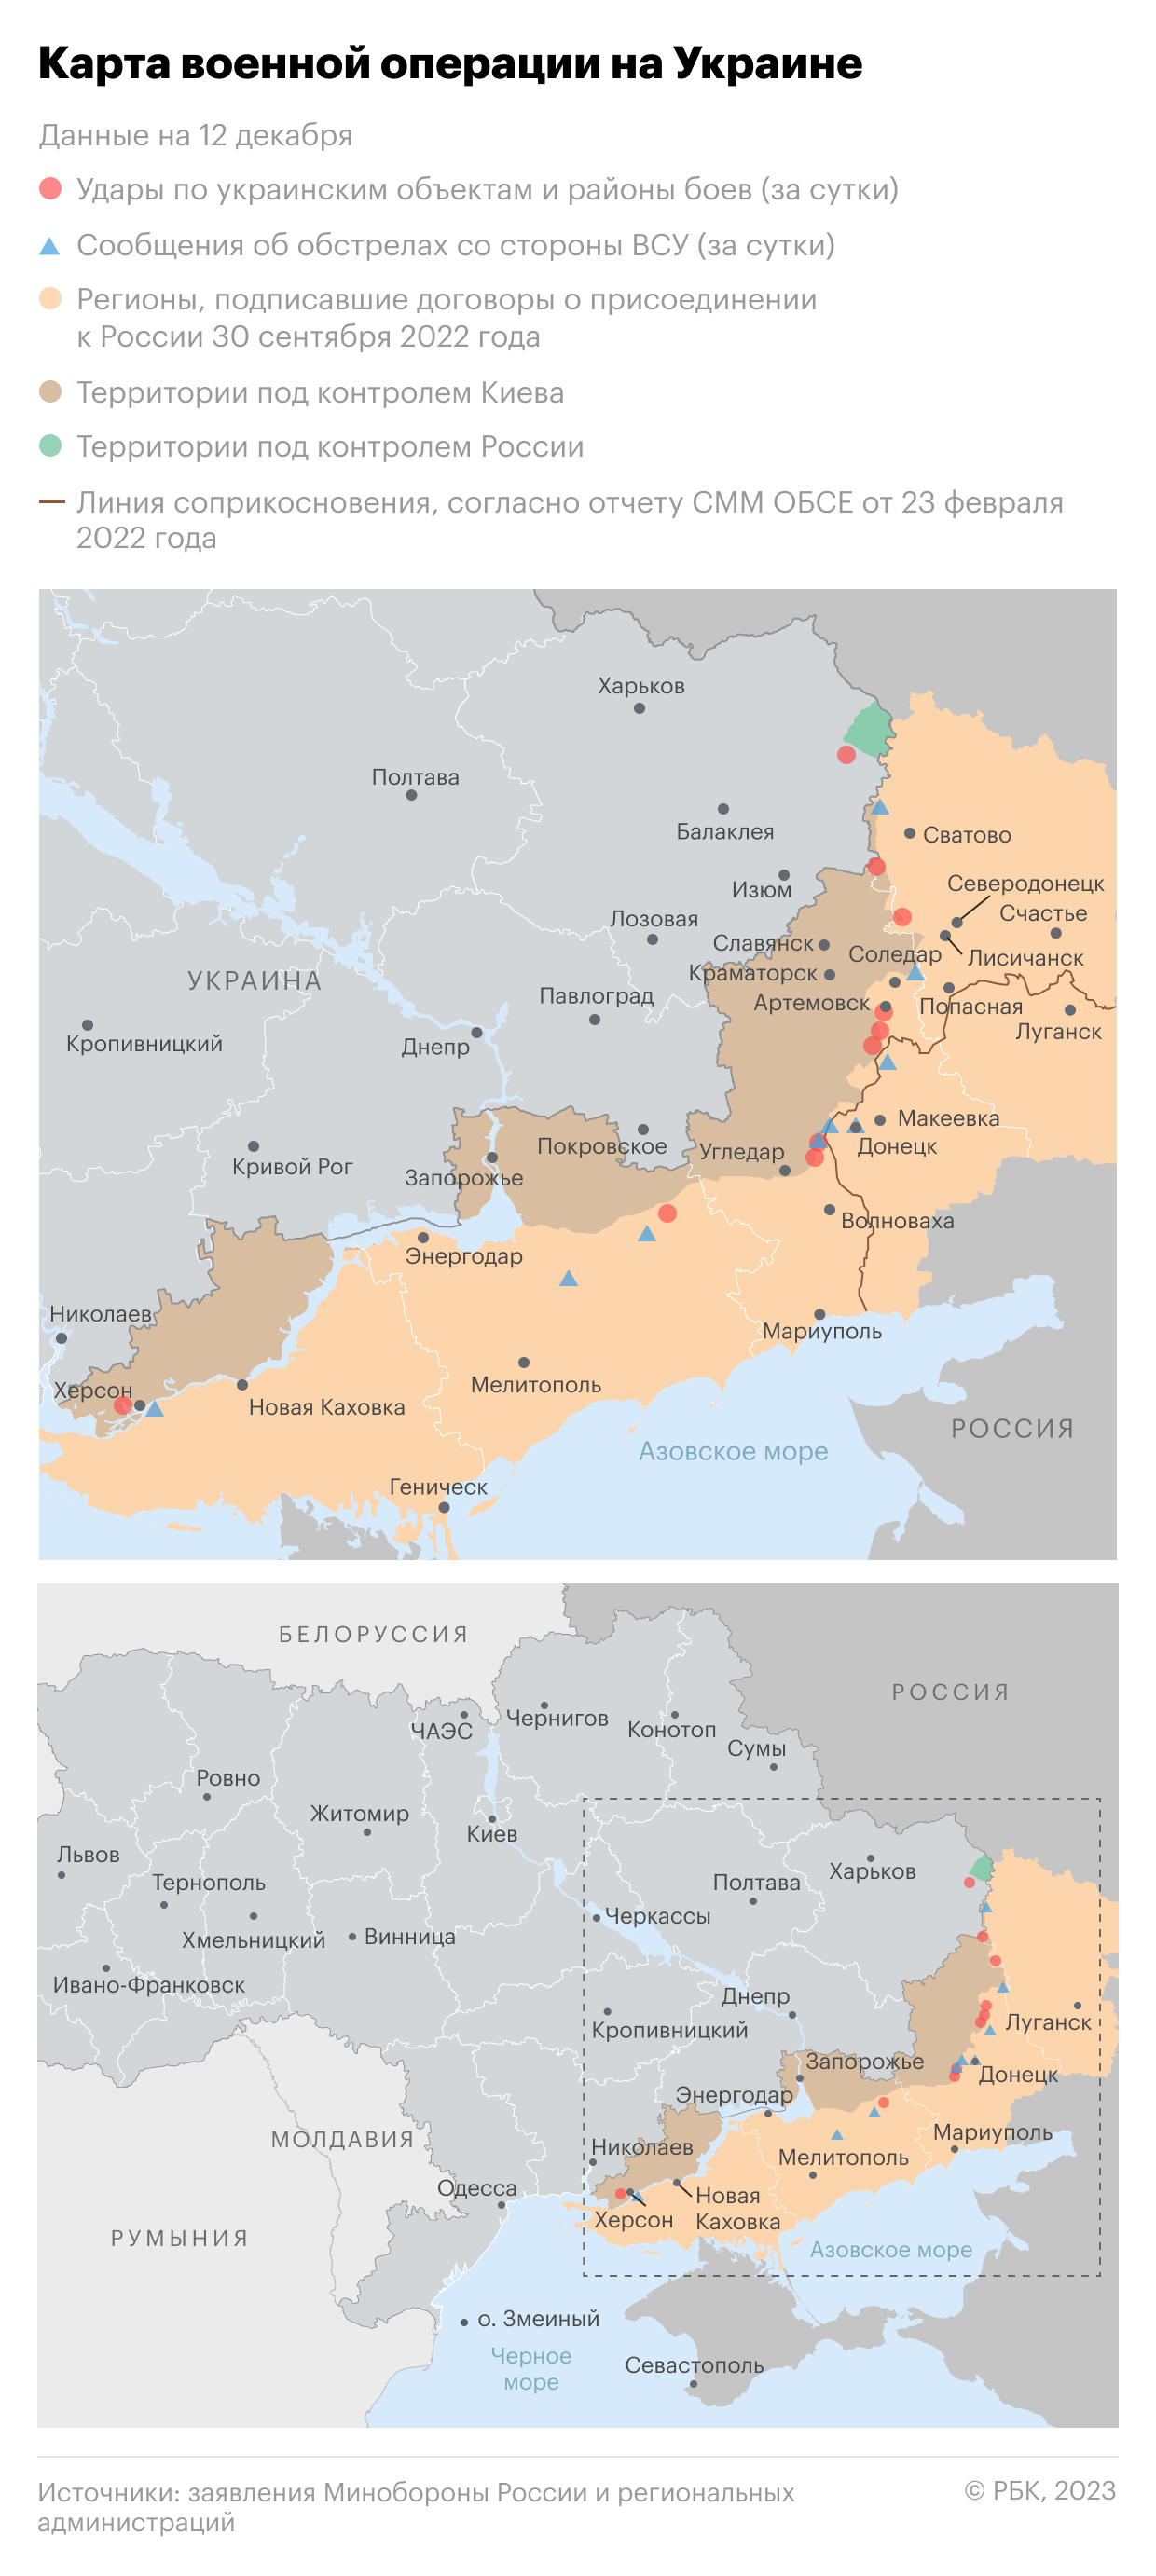 Военная операция на Украине. Карта на 12 декабря